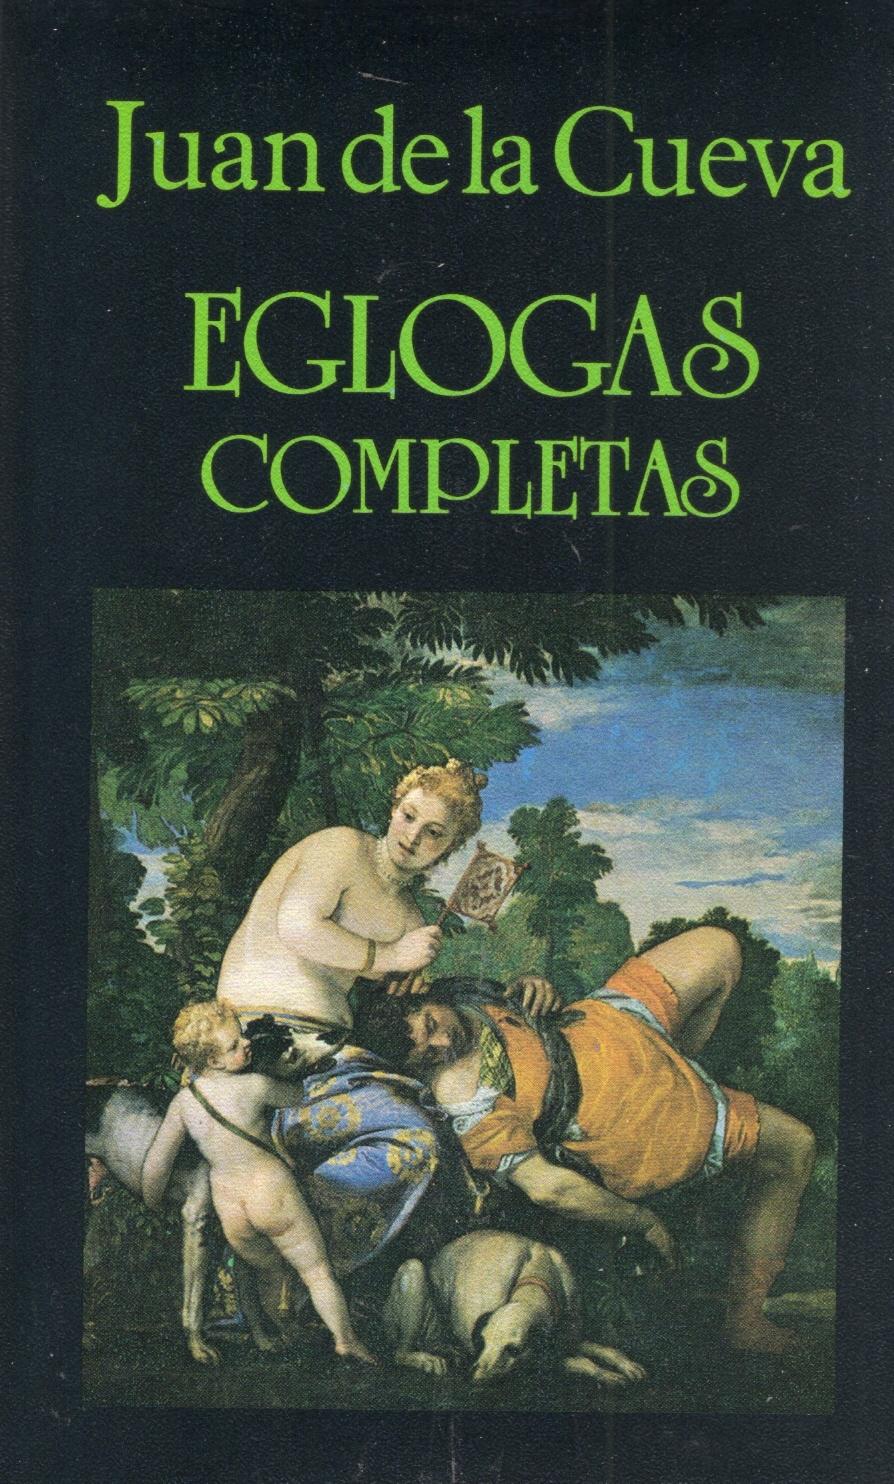 Eglogas completas  "(Juan de la Cueva)". 